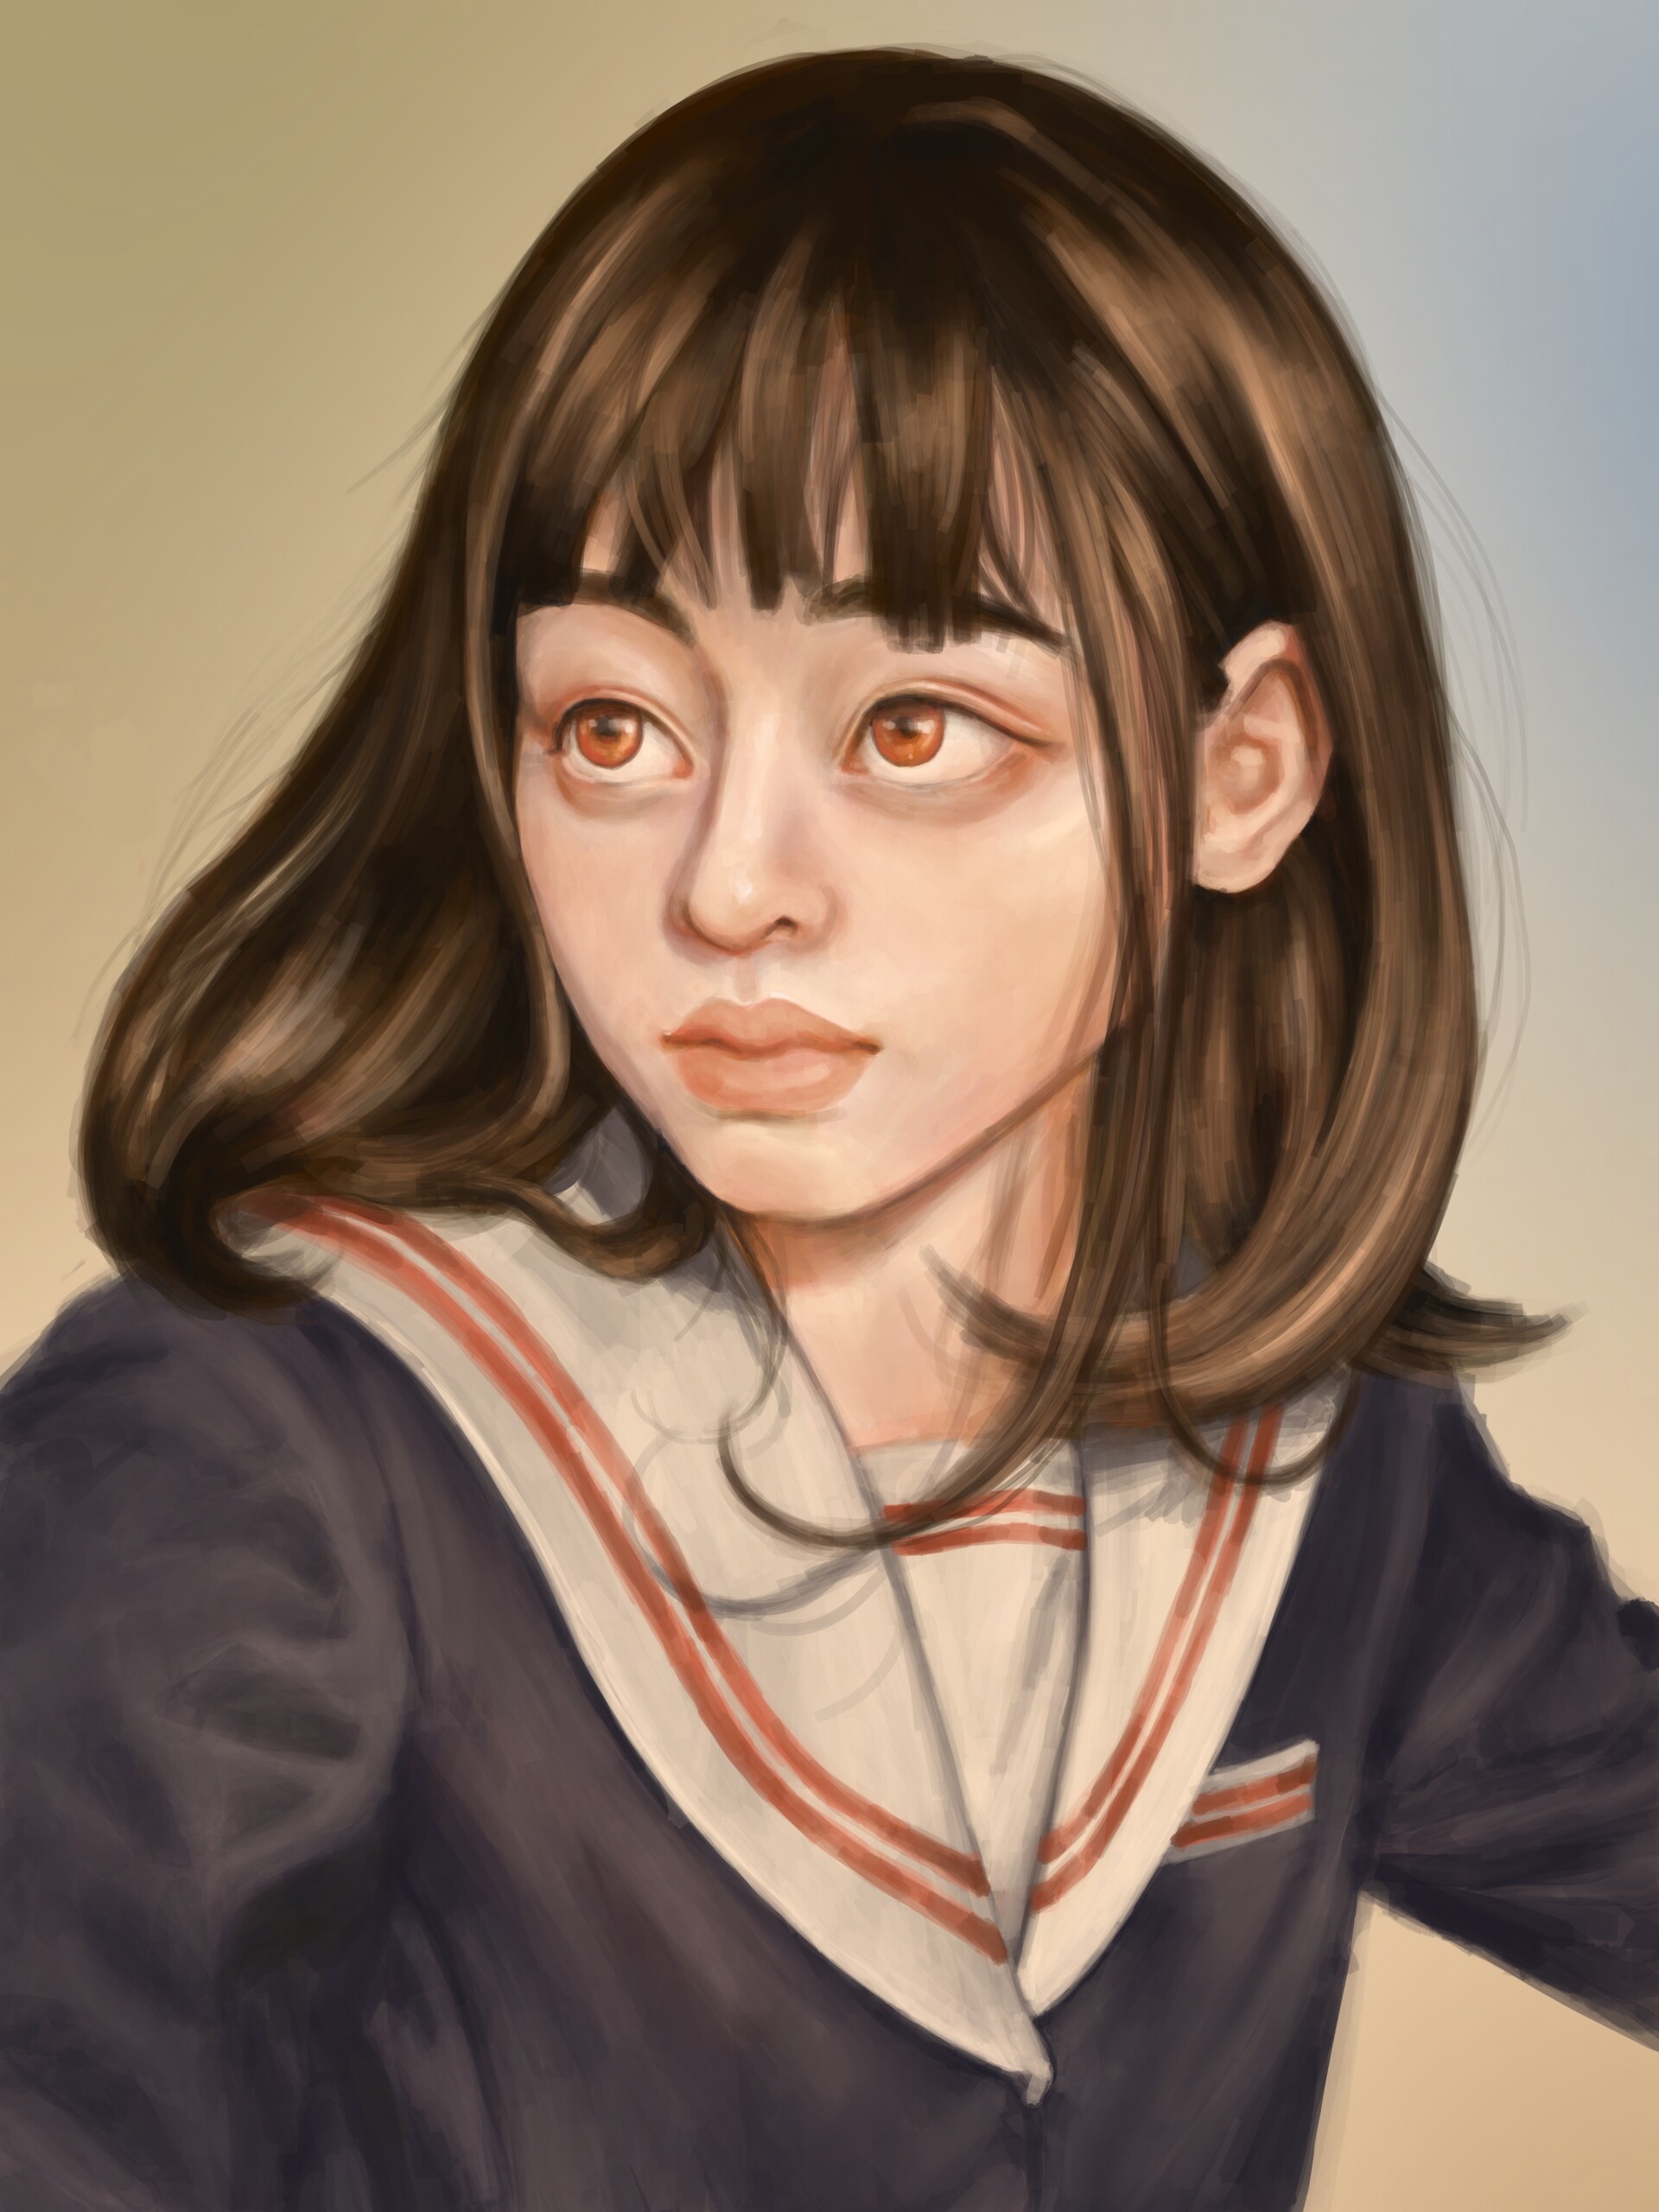 ArtStation - Japan schoolgirl